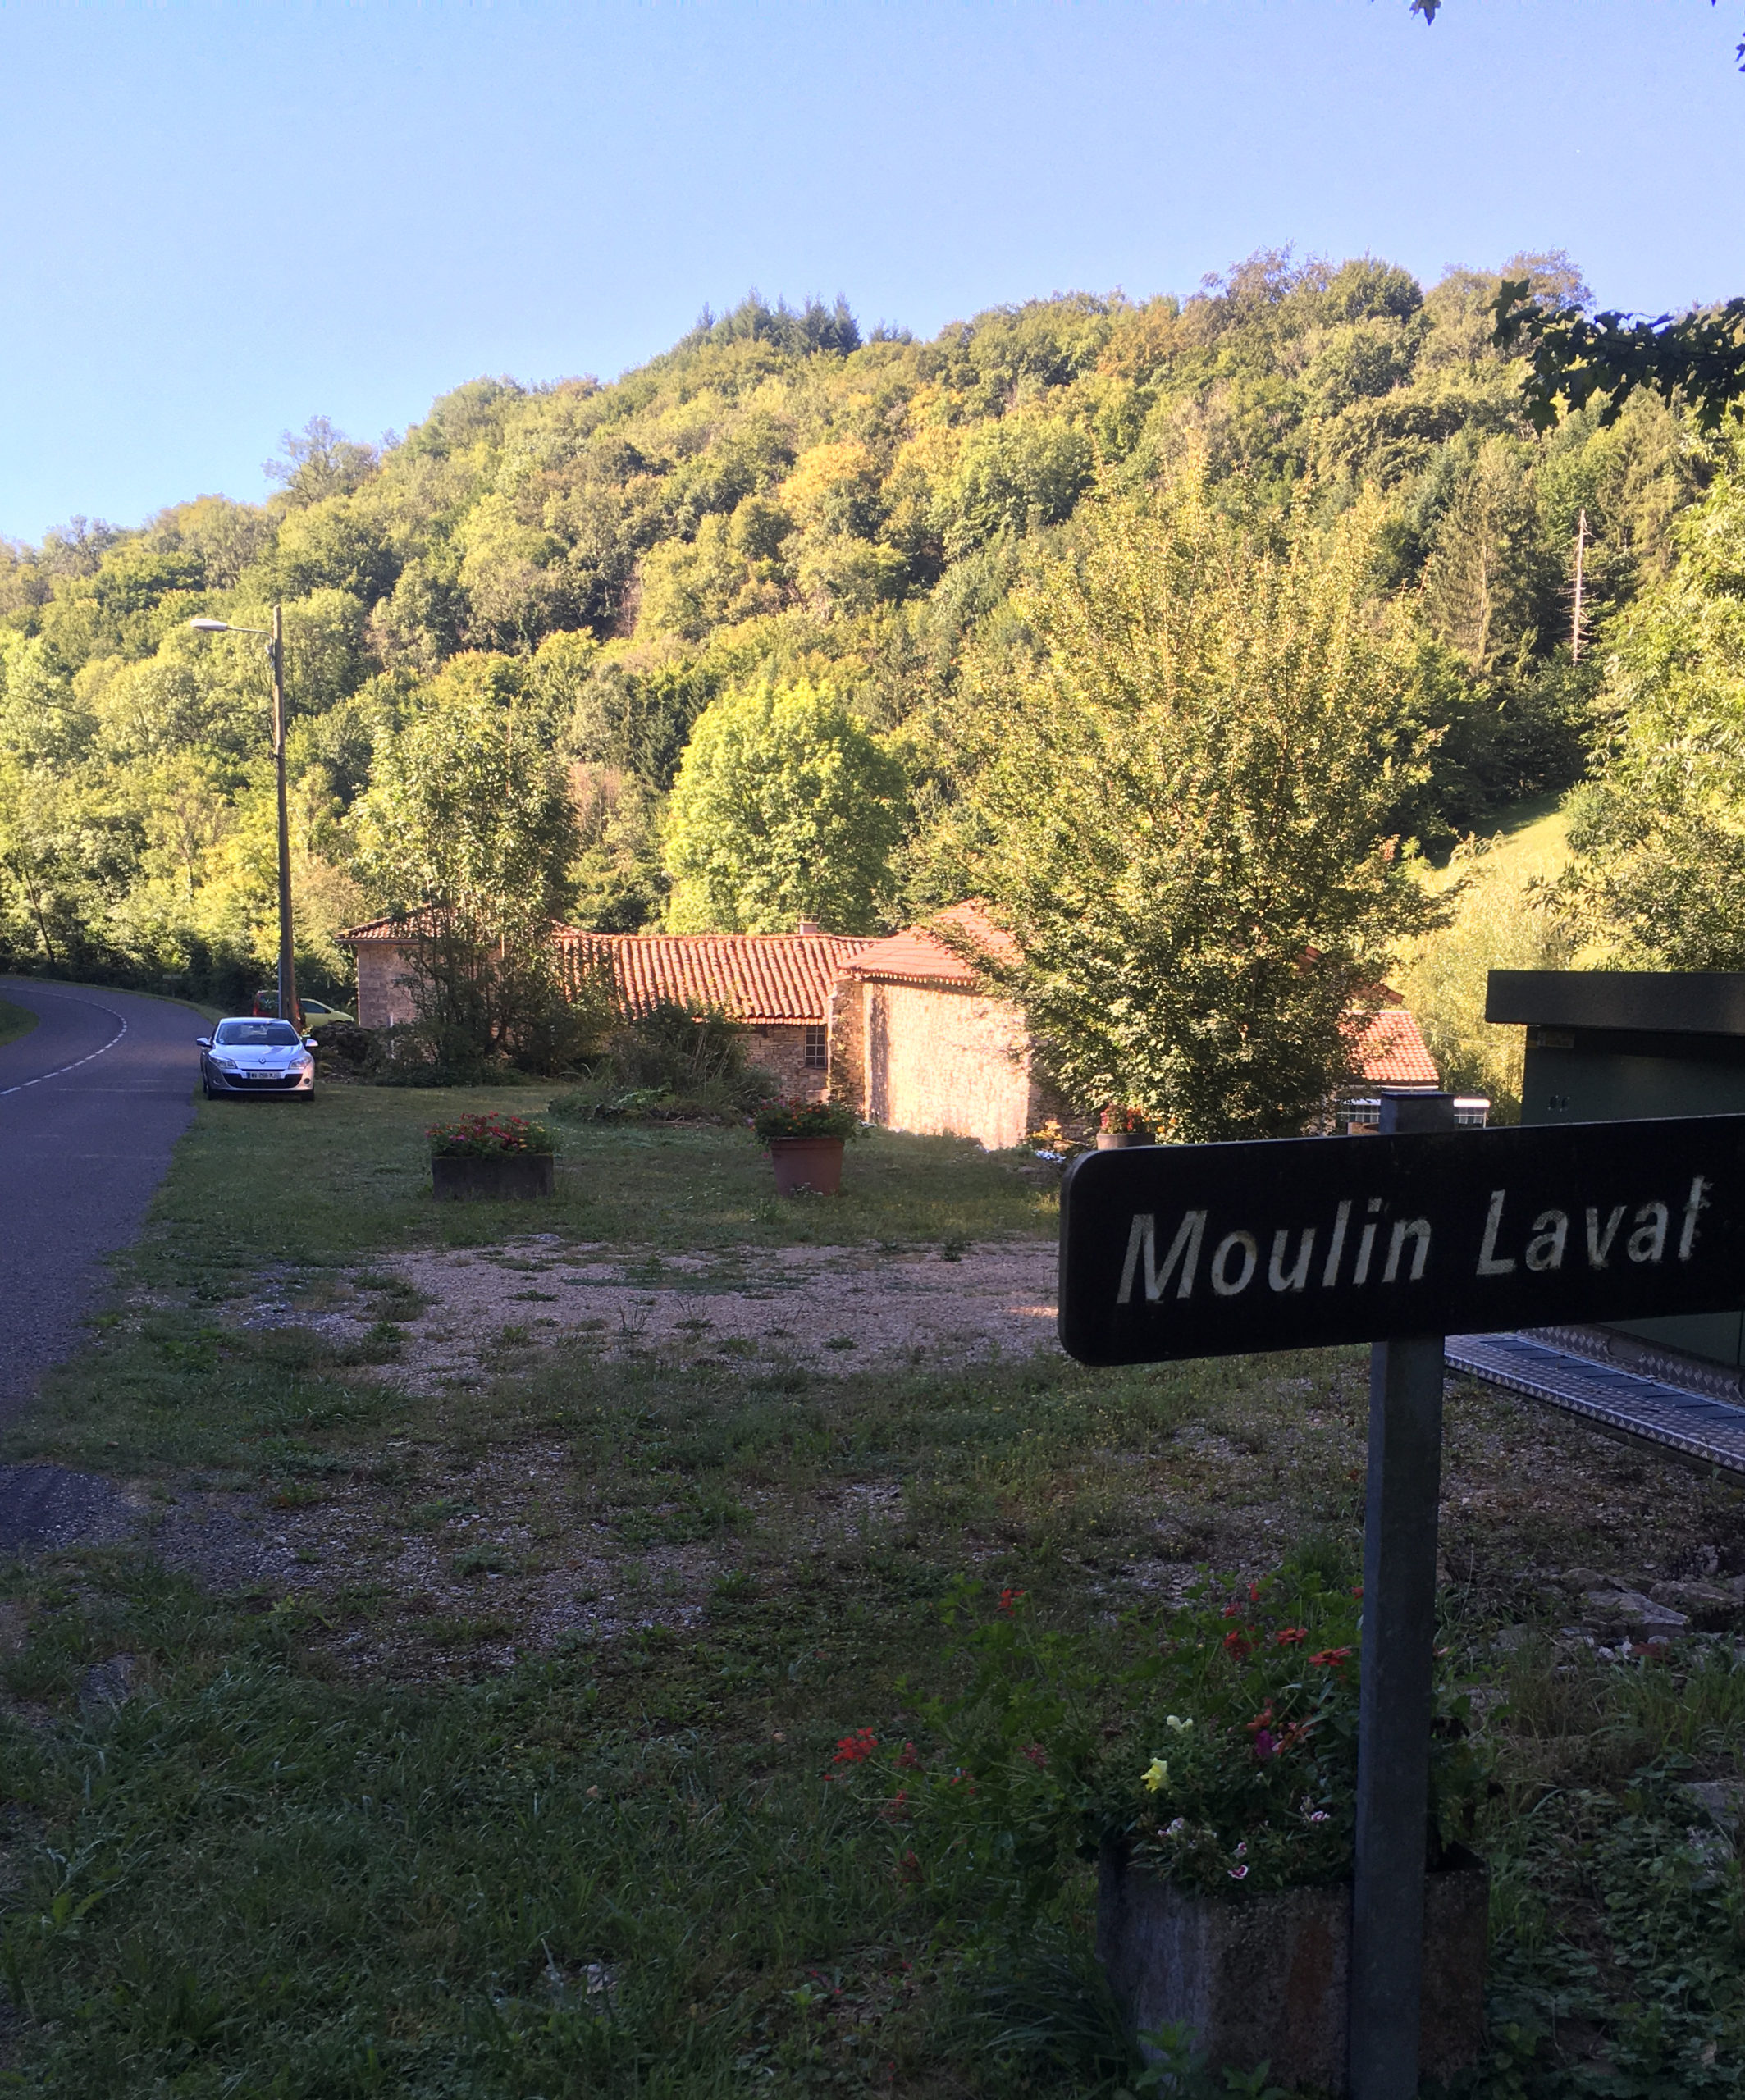 Moulin Laval